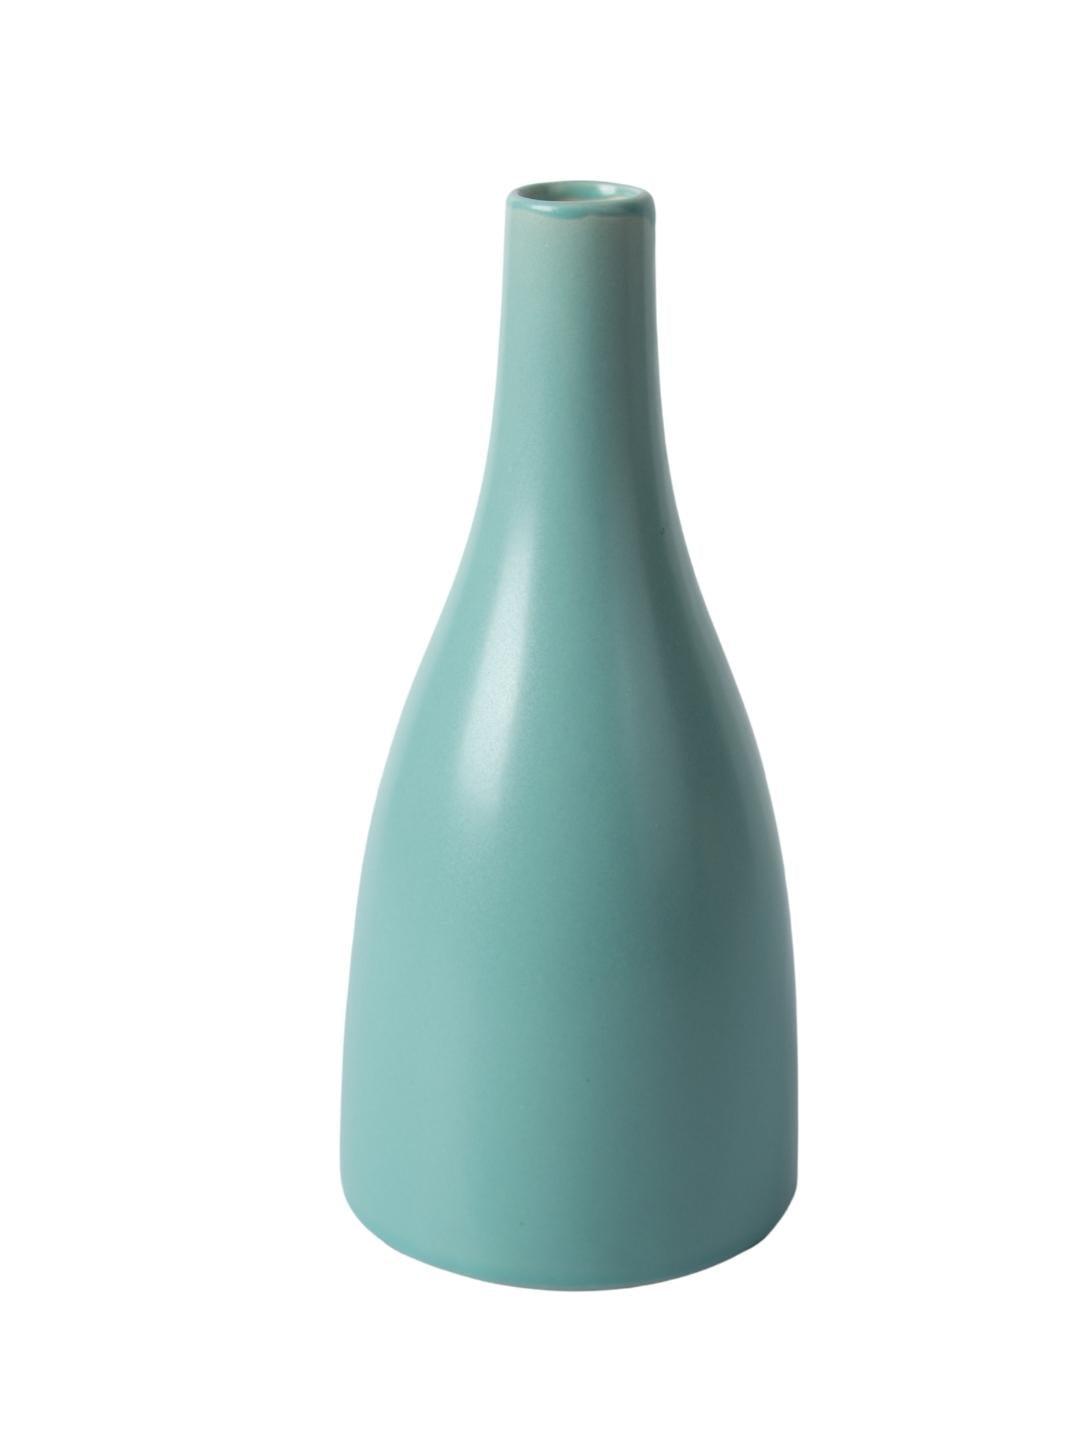 Decorative Ceramic Flower Vase - Green Bottle, Glossy